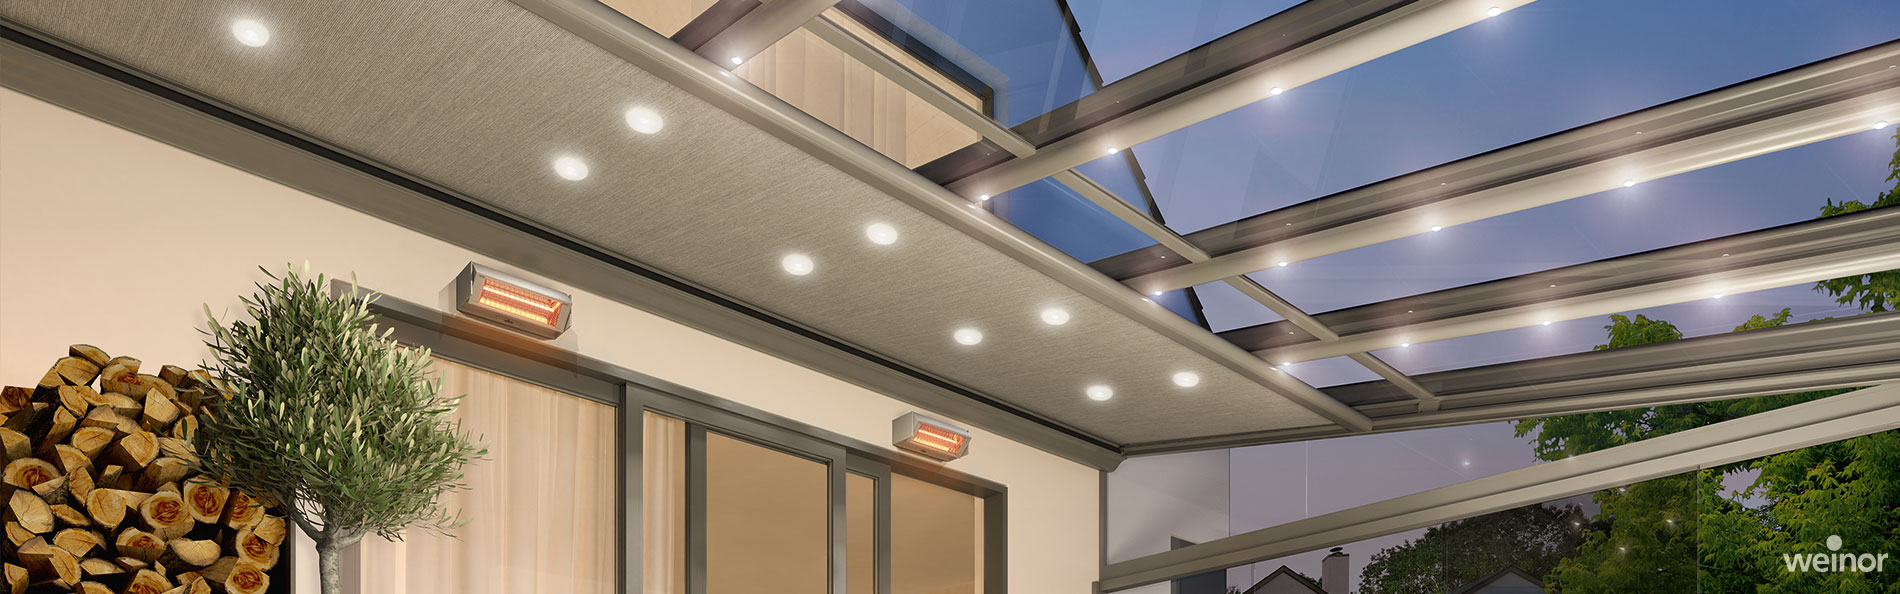 Terrassendach mit Markise, Heizsystem und Lichtleisten © weinor